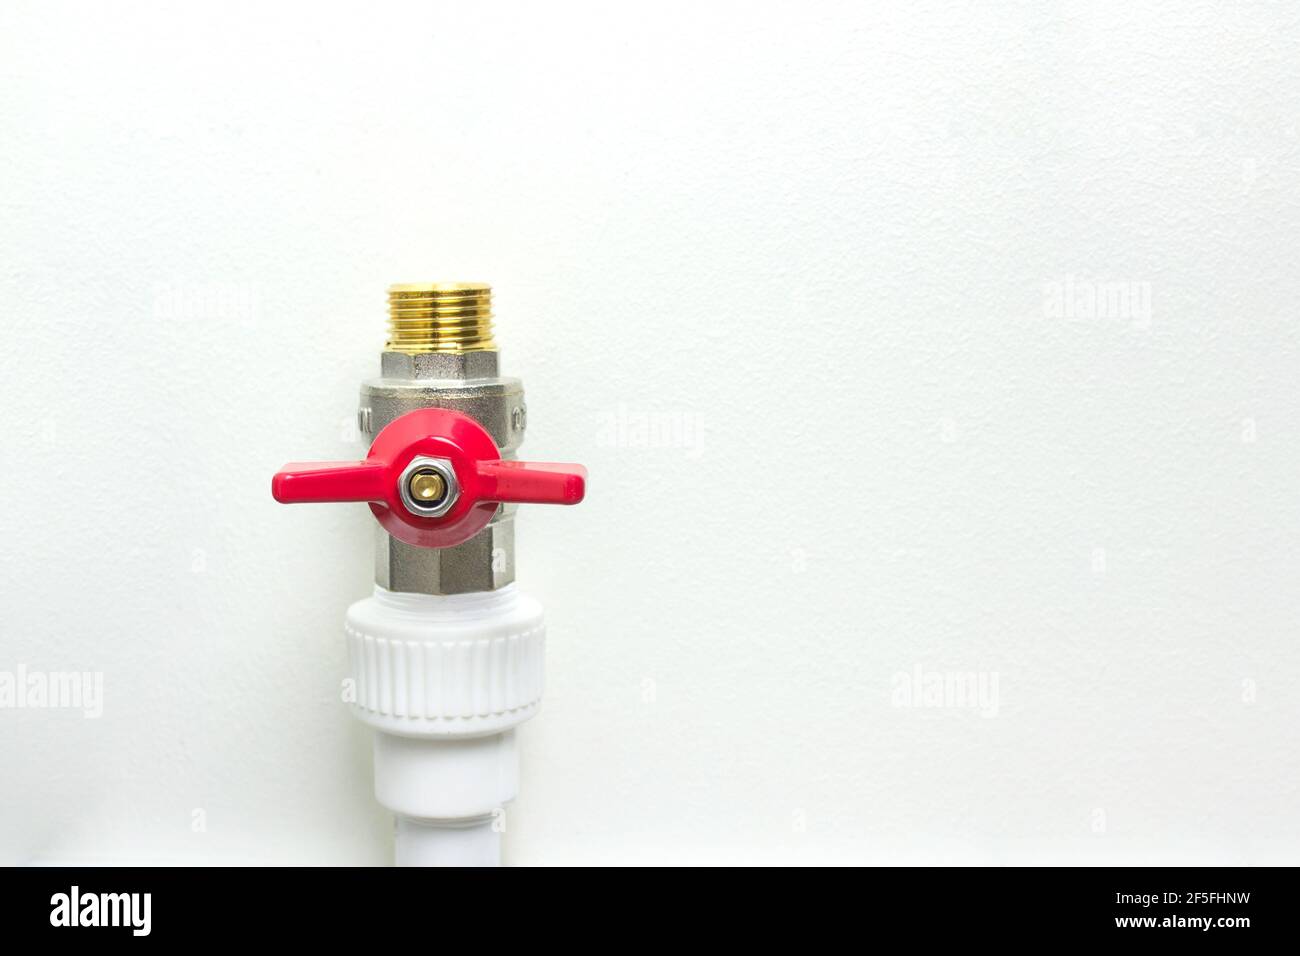 Weißes Polypropylen-Rohr und roter Wasserhahn. Fittings für Wasserleitungen - ein Beispiel für eine Verbindungseinheit bei der Schaffung eines Wasserversorgungssystems aus PVC-Rohren. Stockfoto